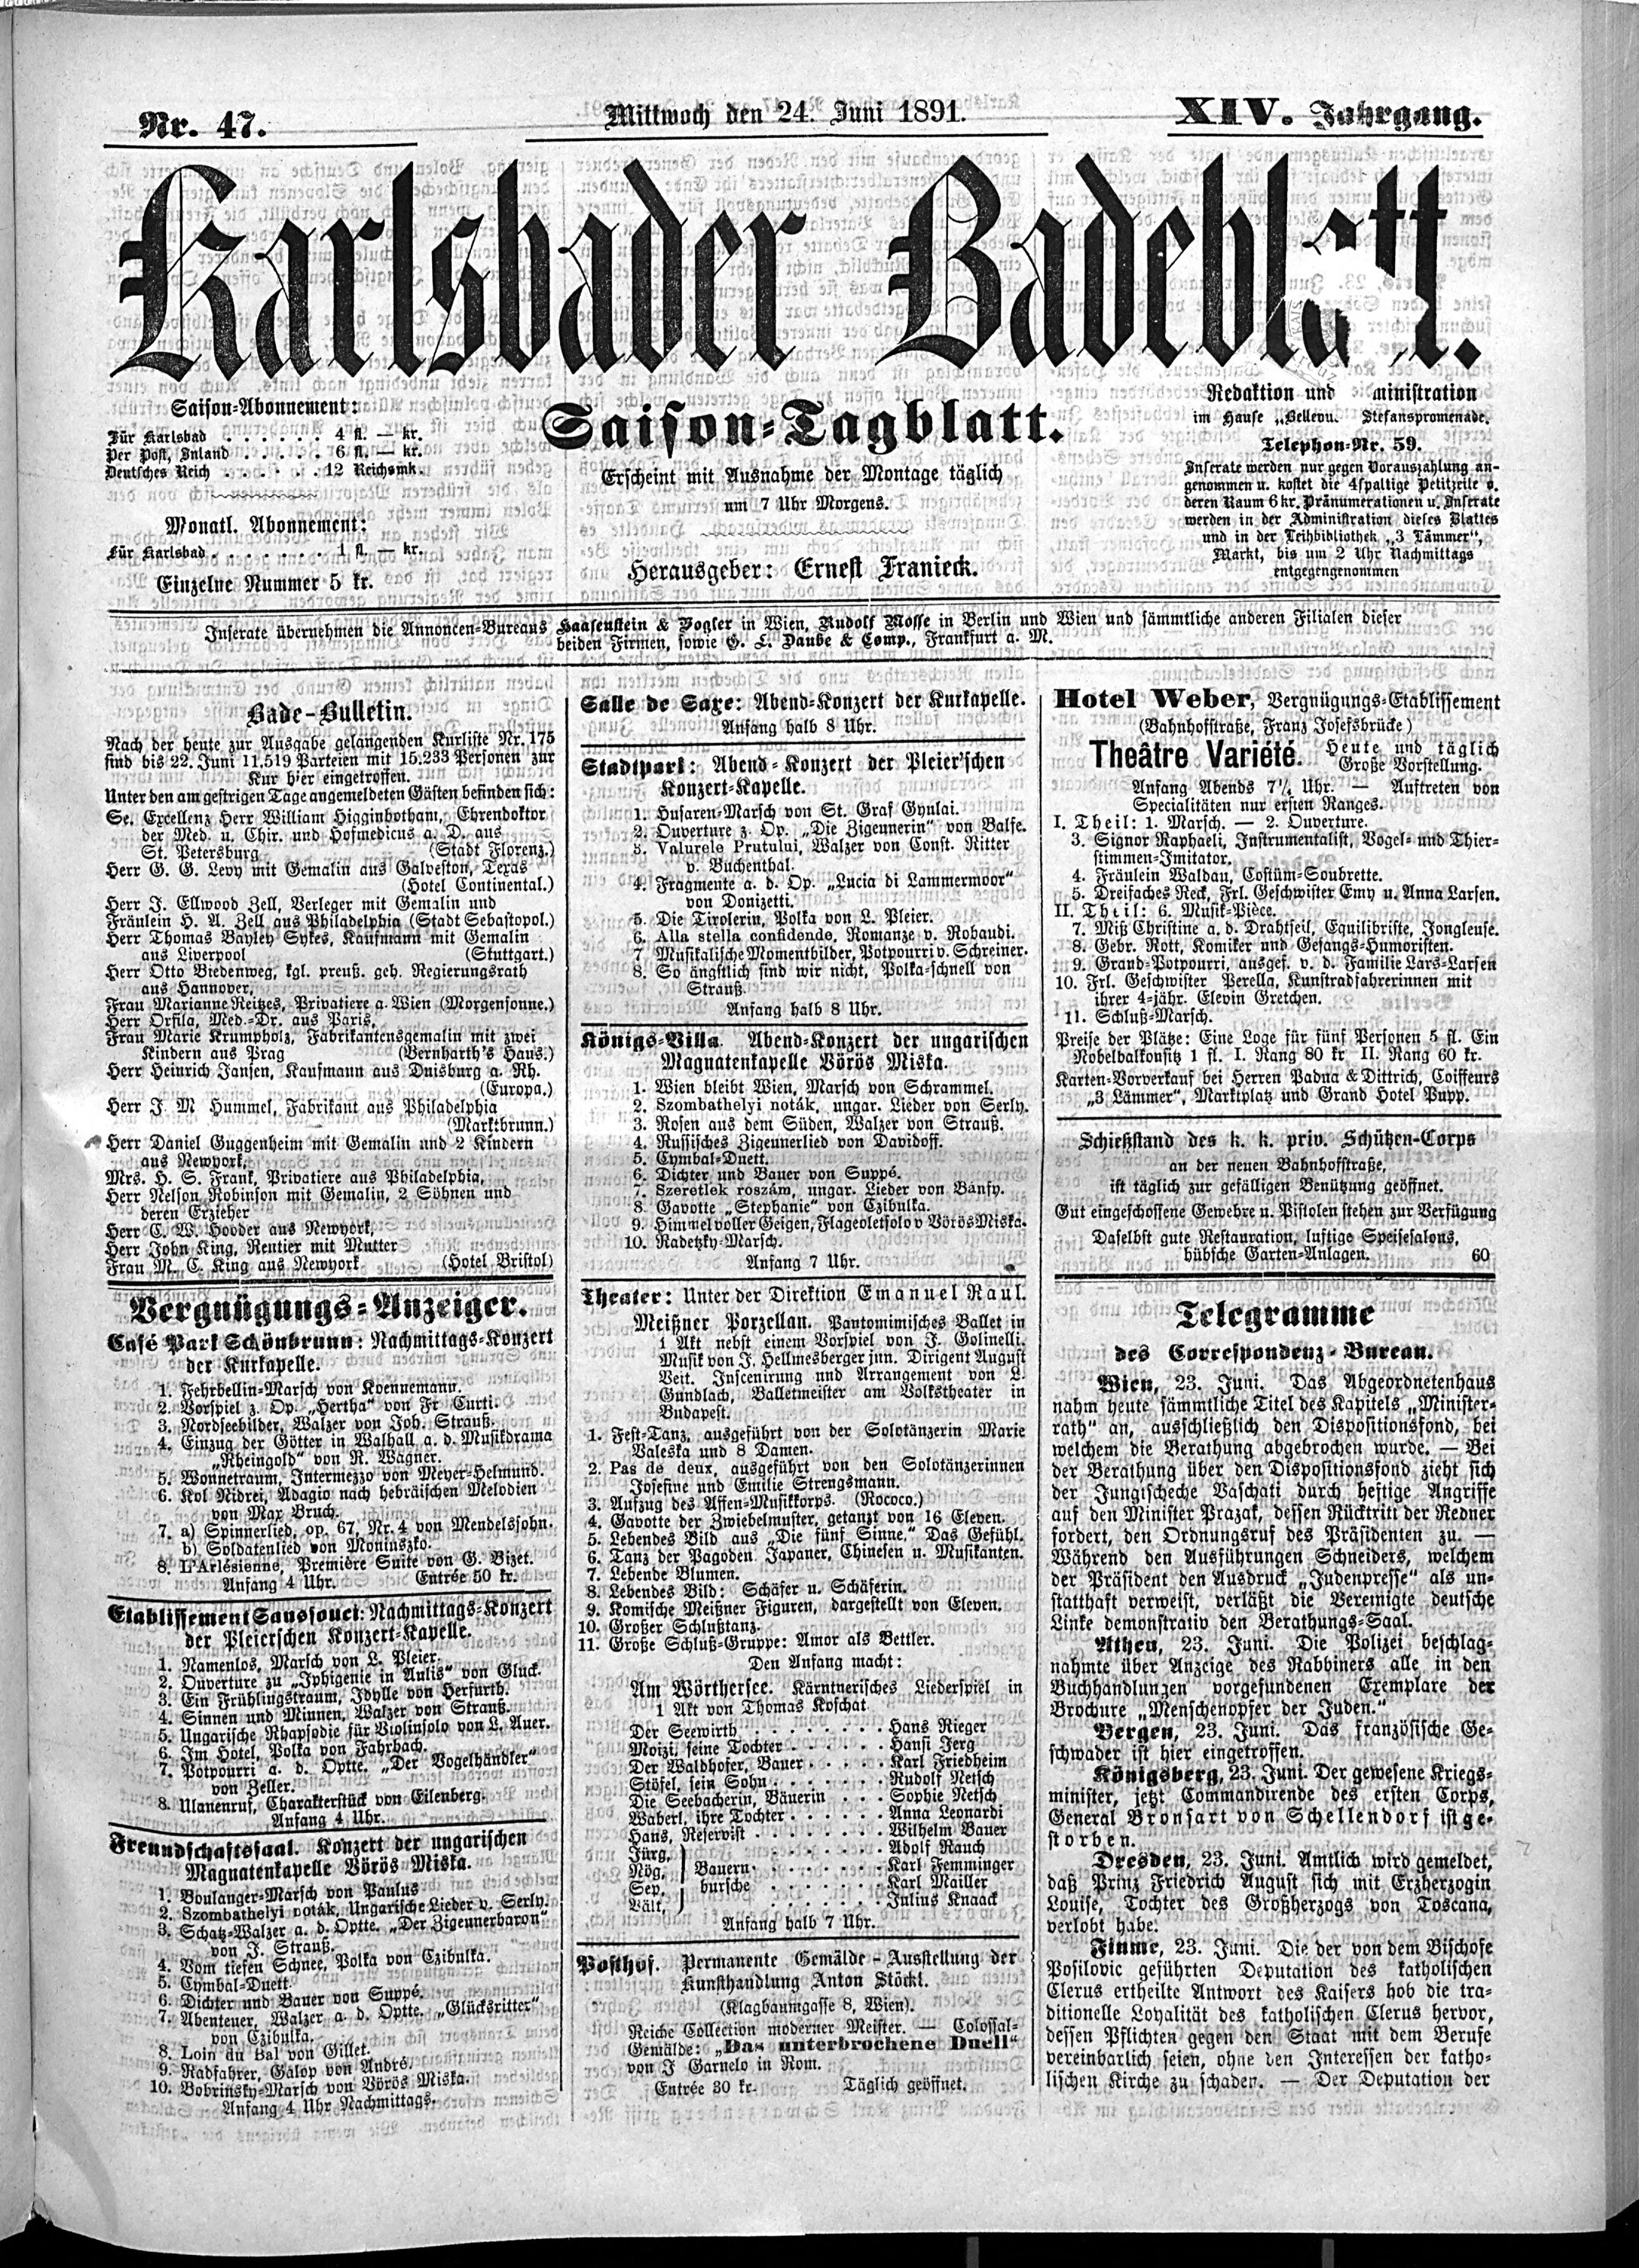 1. karlsbader-badeblatt-1891-06-24-n47_0935